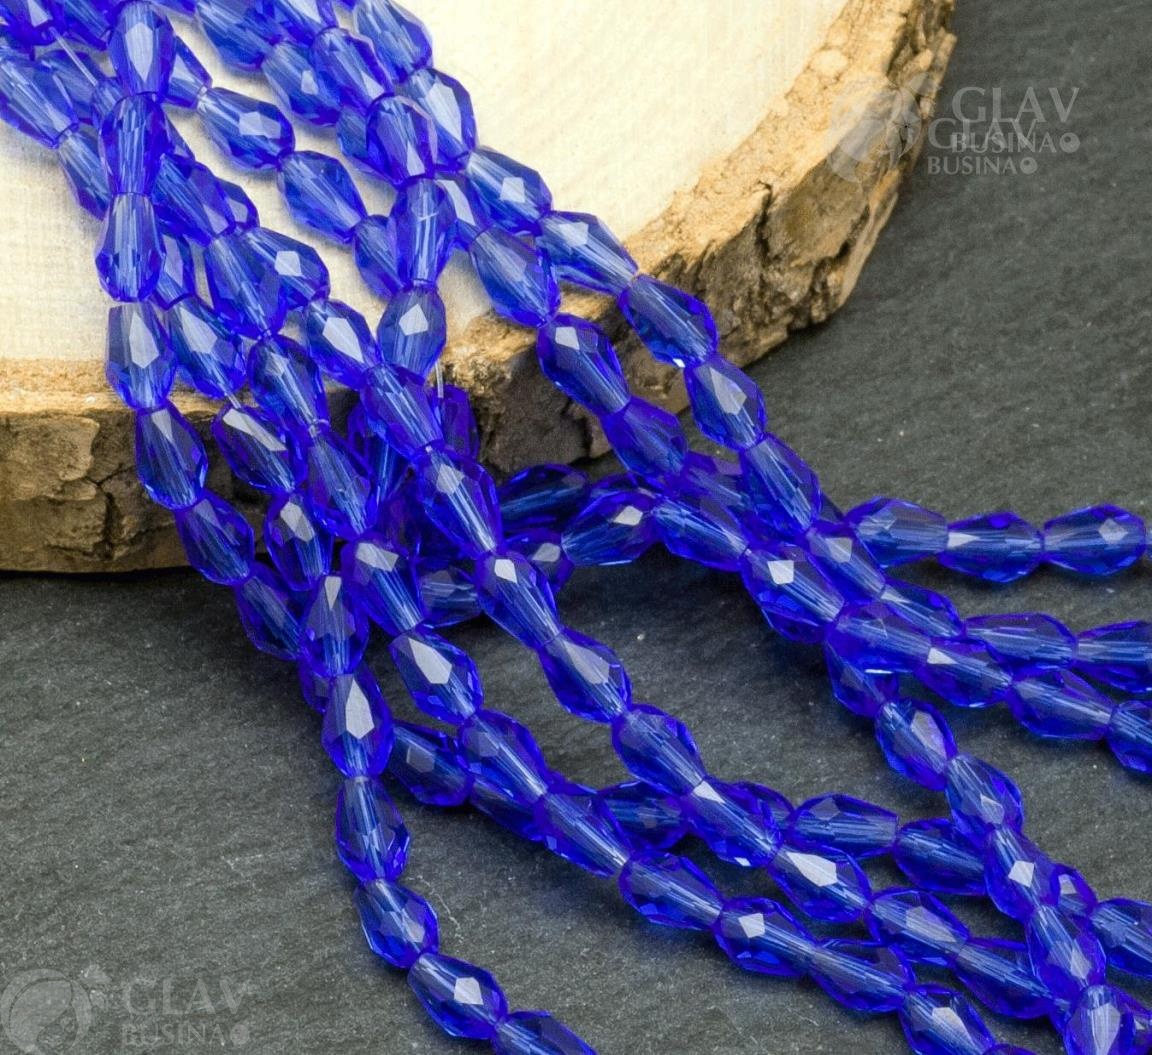 Нитка граненых хрустальных бусин-капель размером 5х3мм, длиной 47см. В нитке около 85 синих бусин. Привлекательное украшение для создания элегантных и стильных аксессуаров.